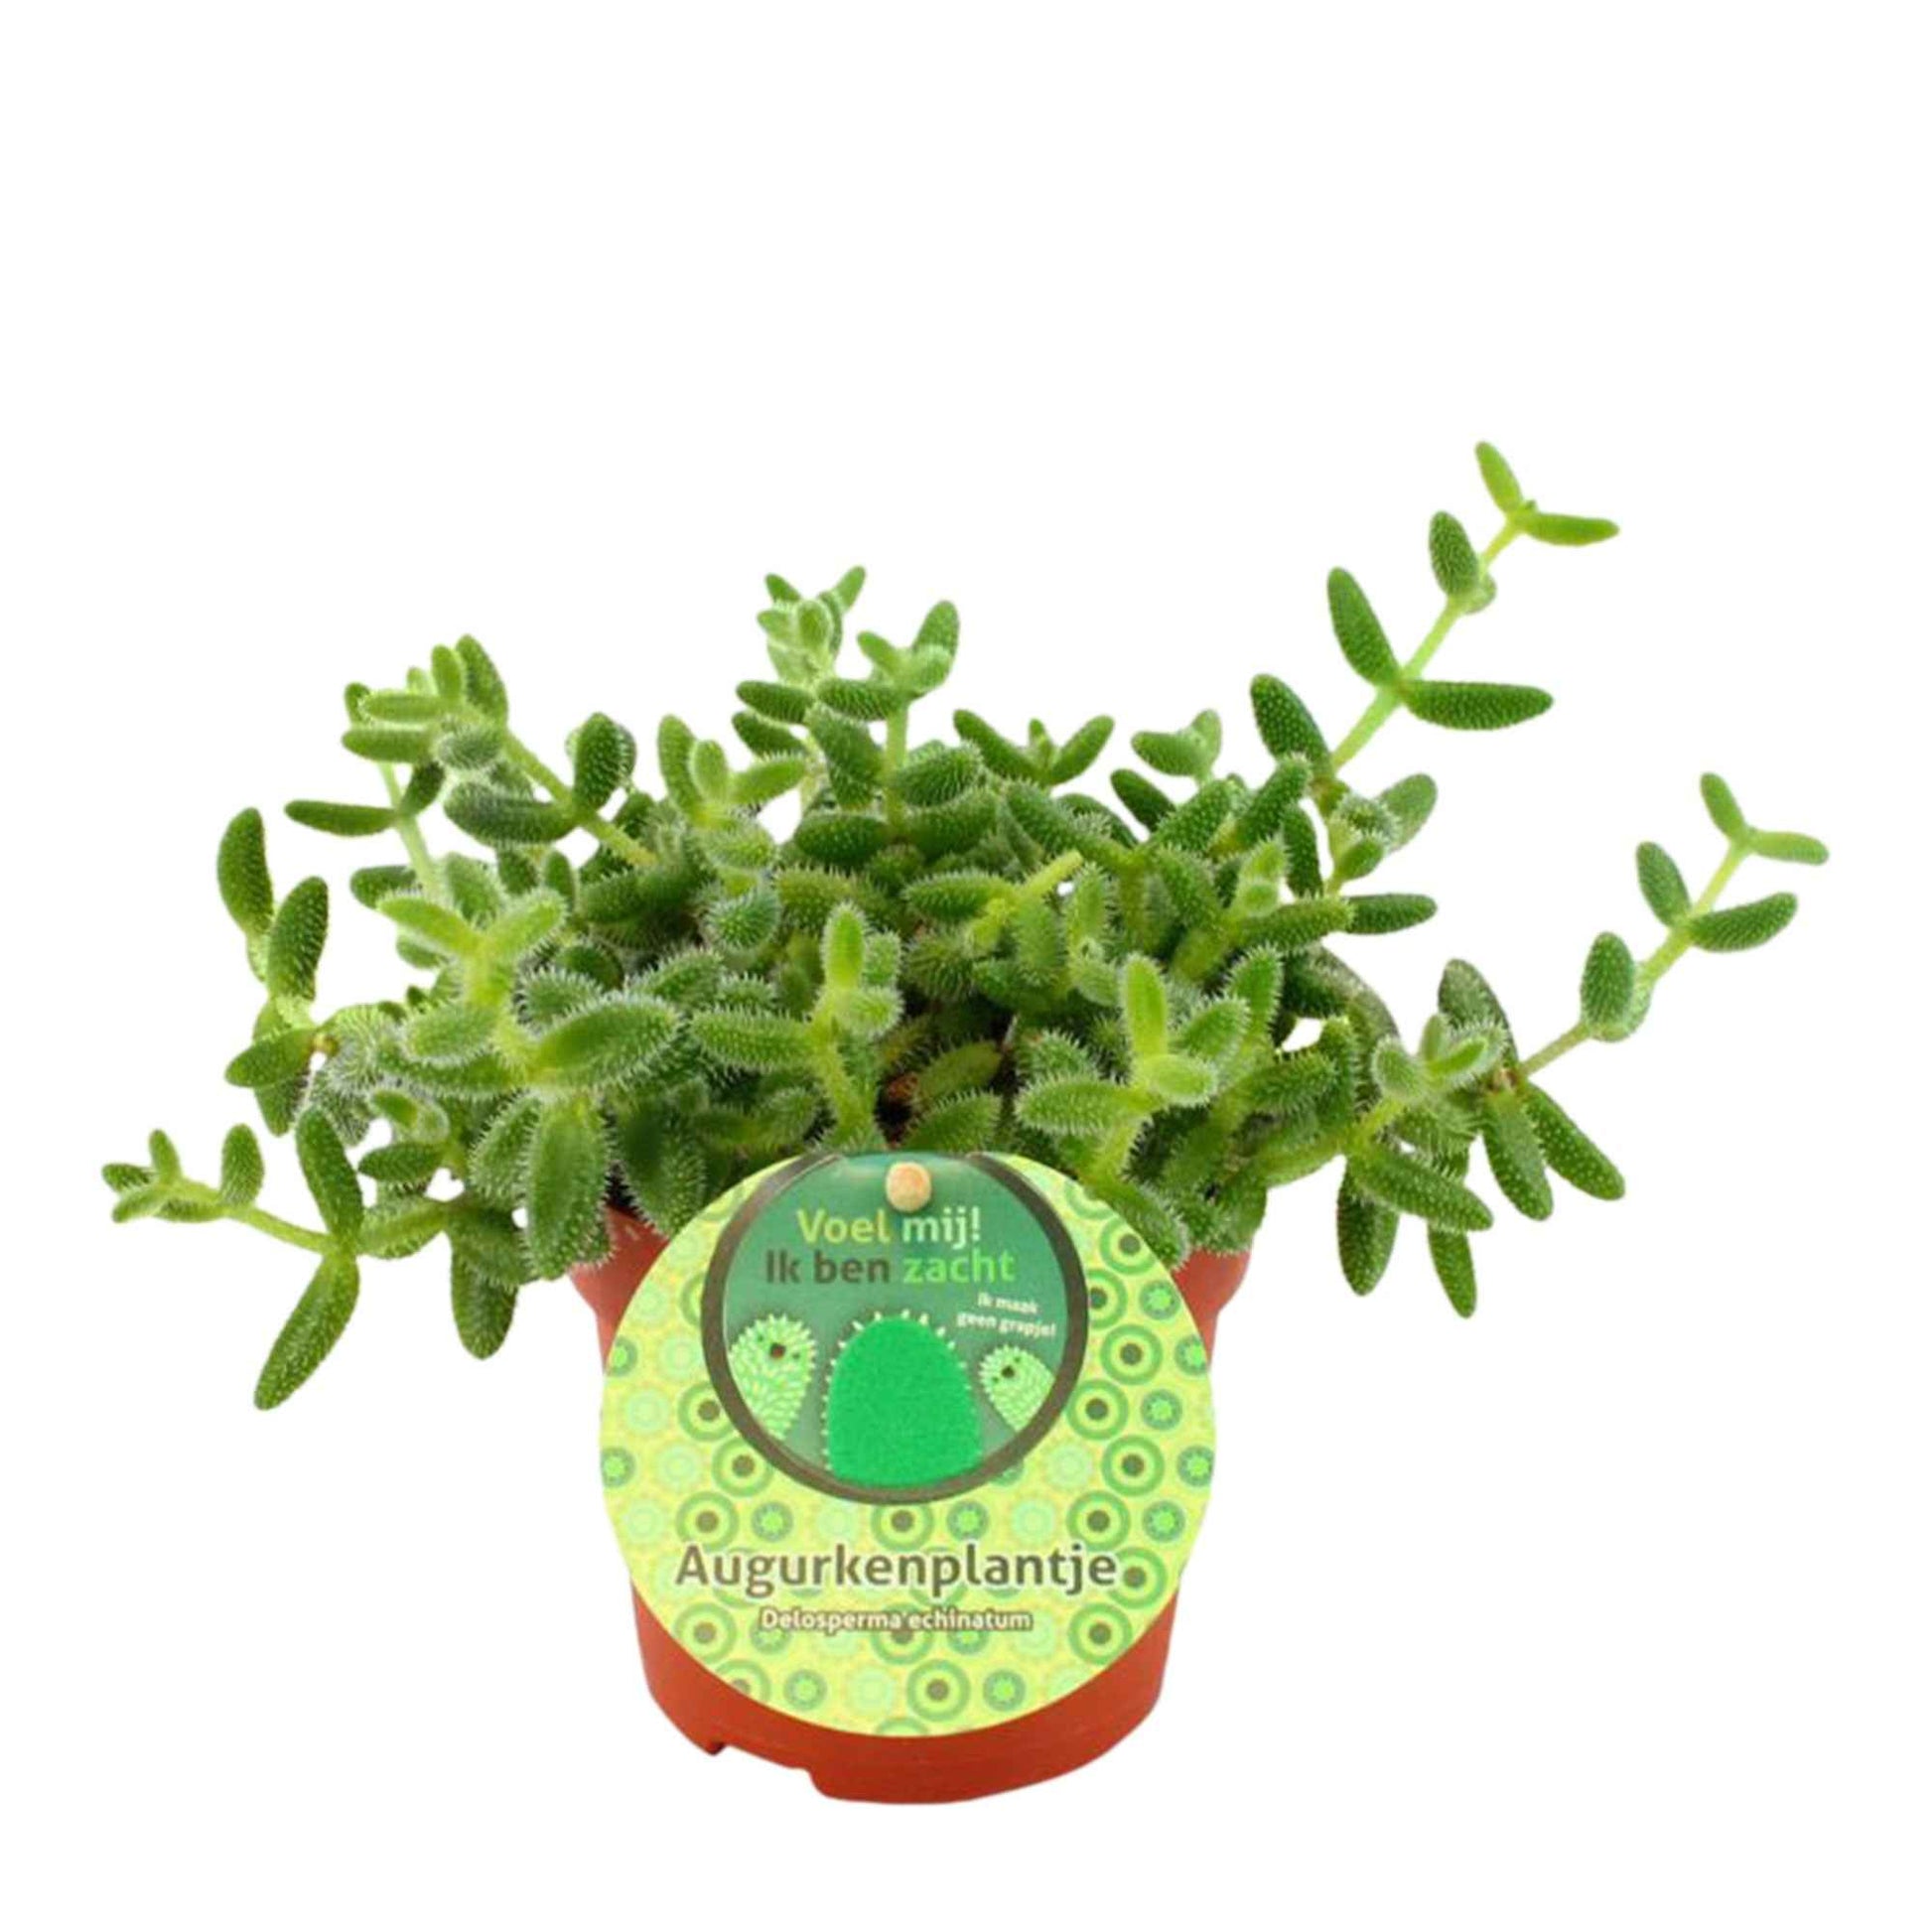 Augurkenplant Delosperma echinatum - Groene kamerplanten